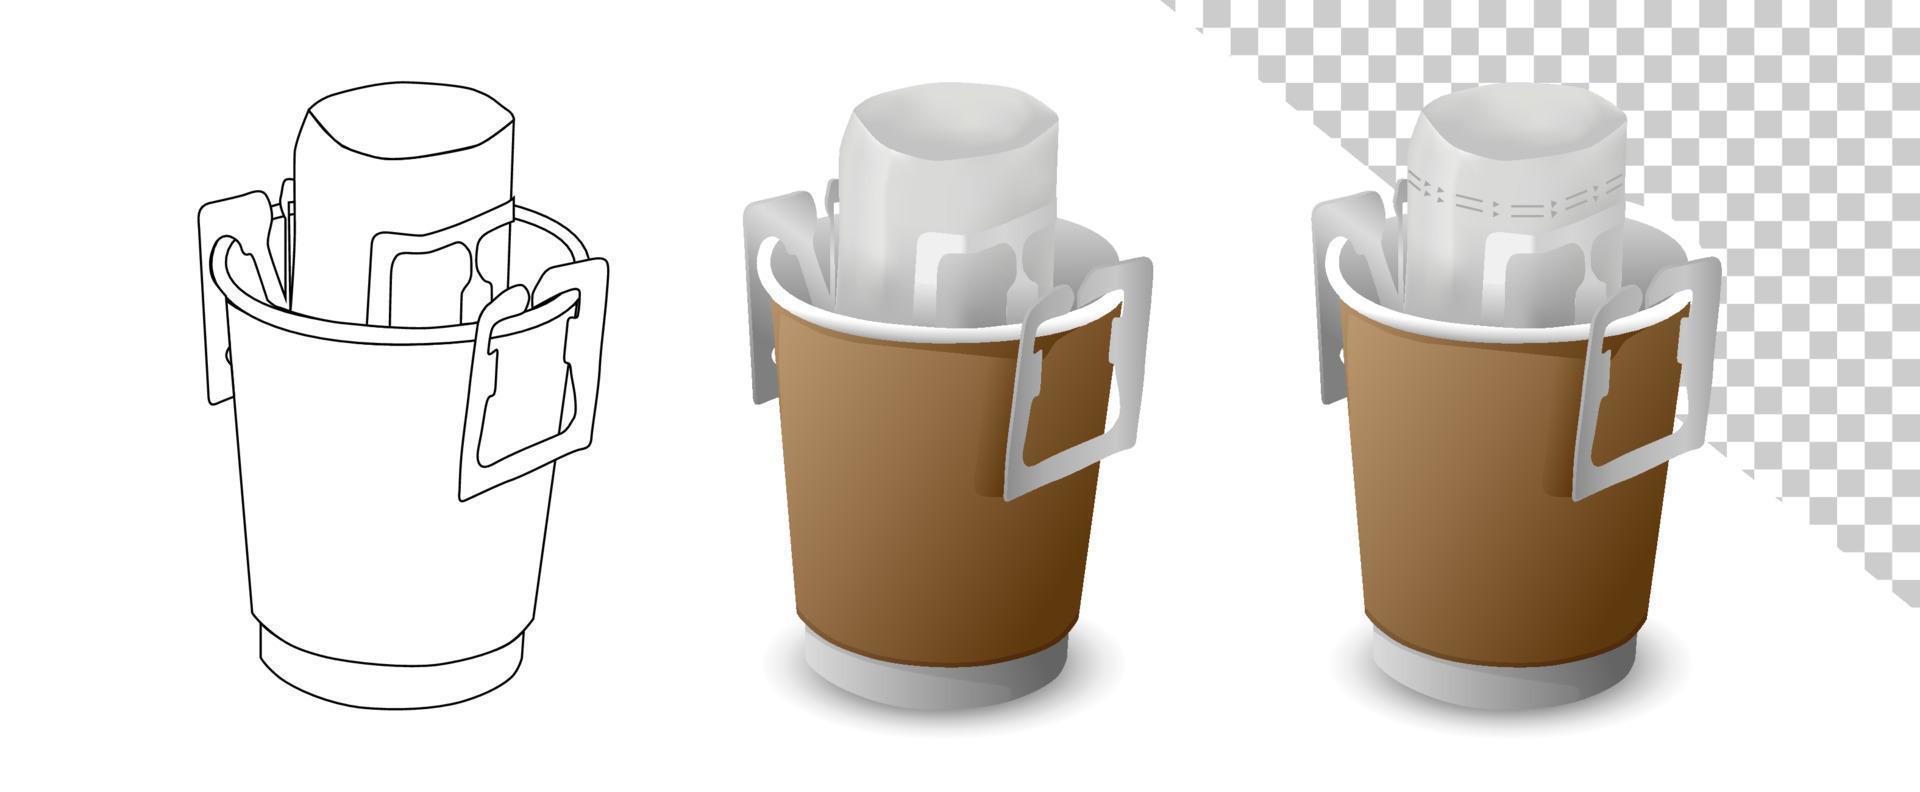 caffè a goccia con vettore di sacca antigoccia portatile su sfondo bianco. tazza artigianale con bustina di caffè in tazza.